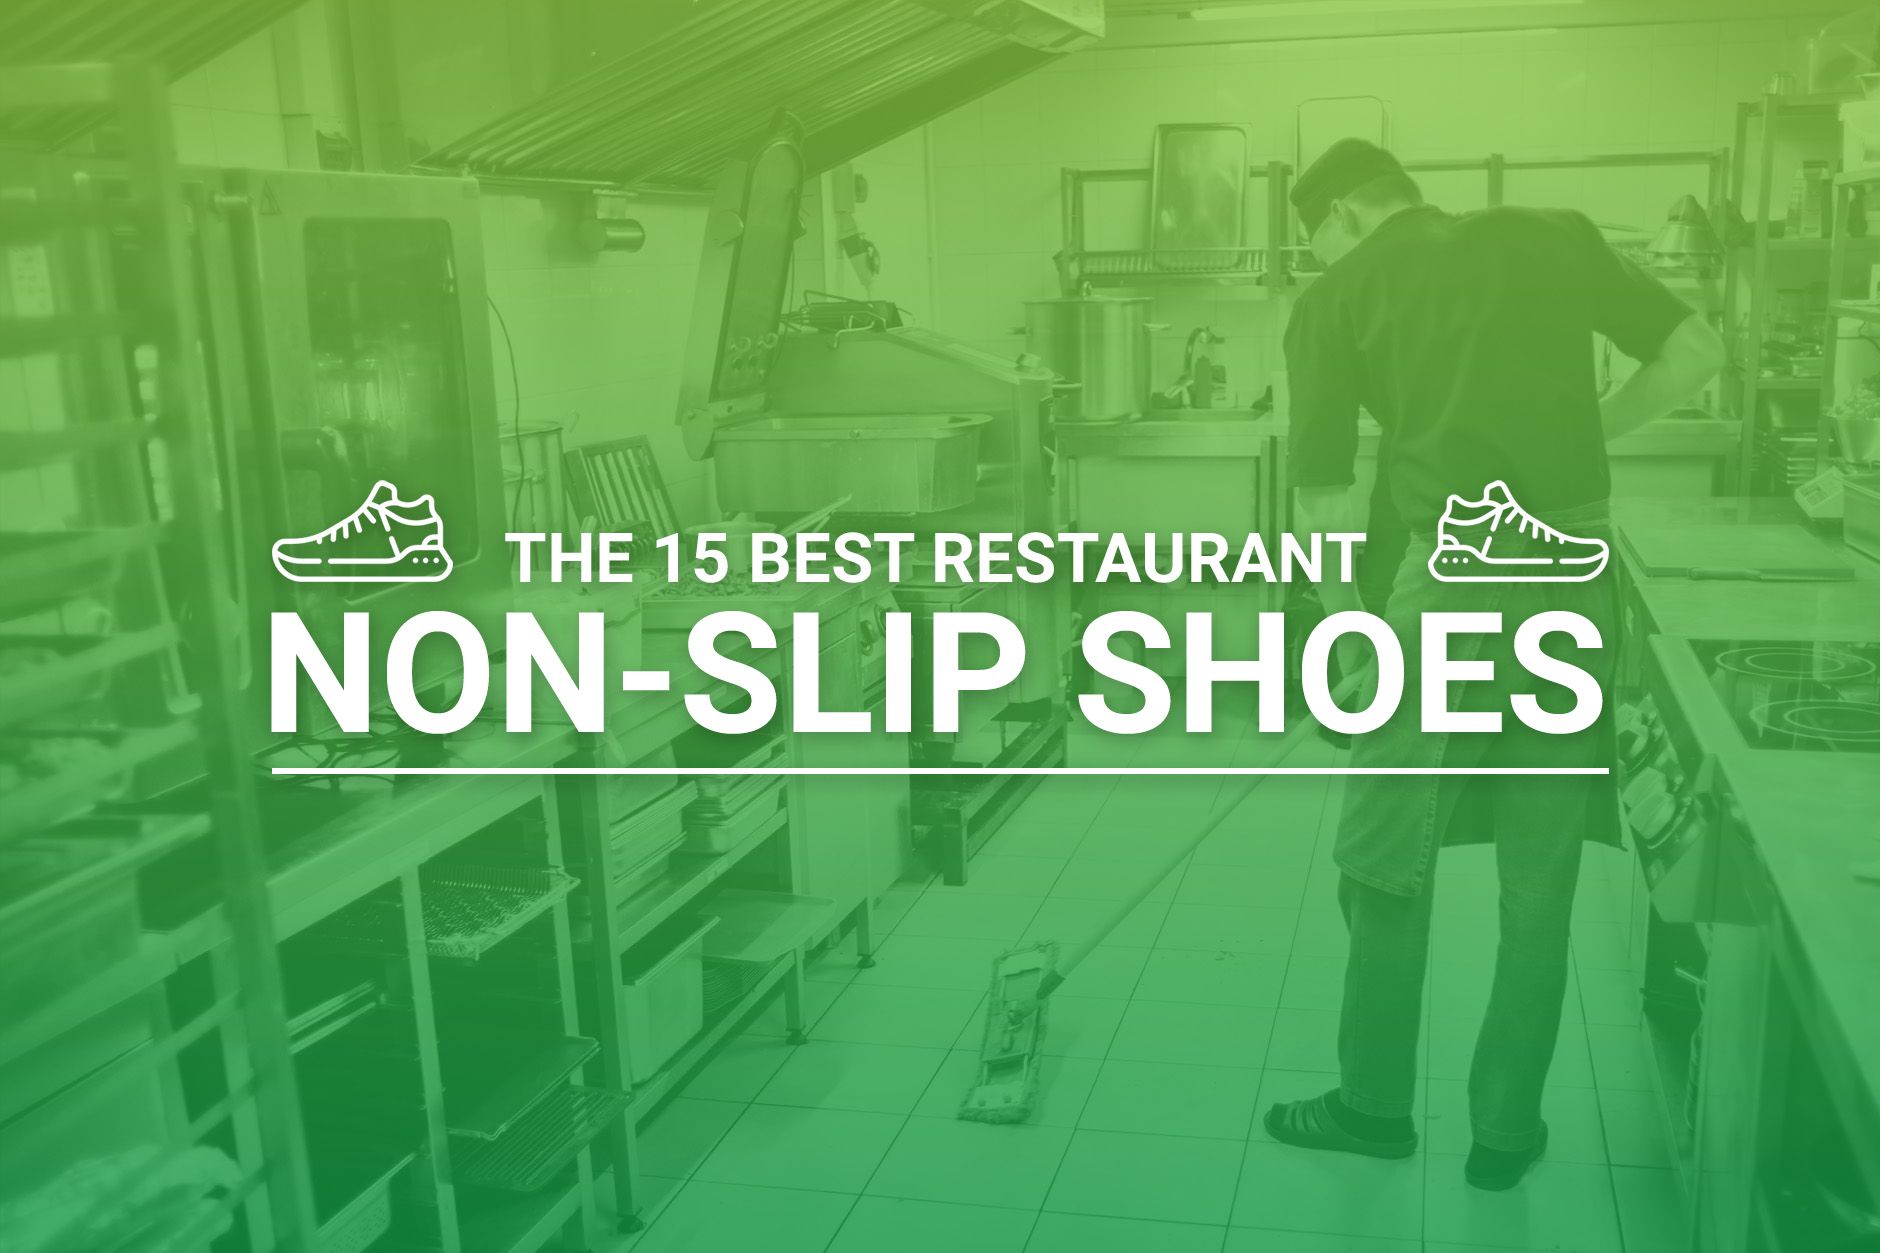 https://budgetbranders.com/wp-content/uploads/2022/10/restaurant-non-slip-shoes.jpg